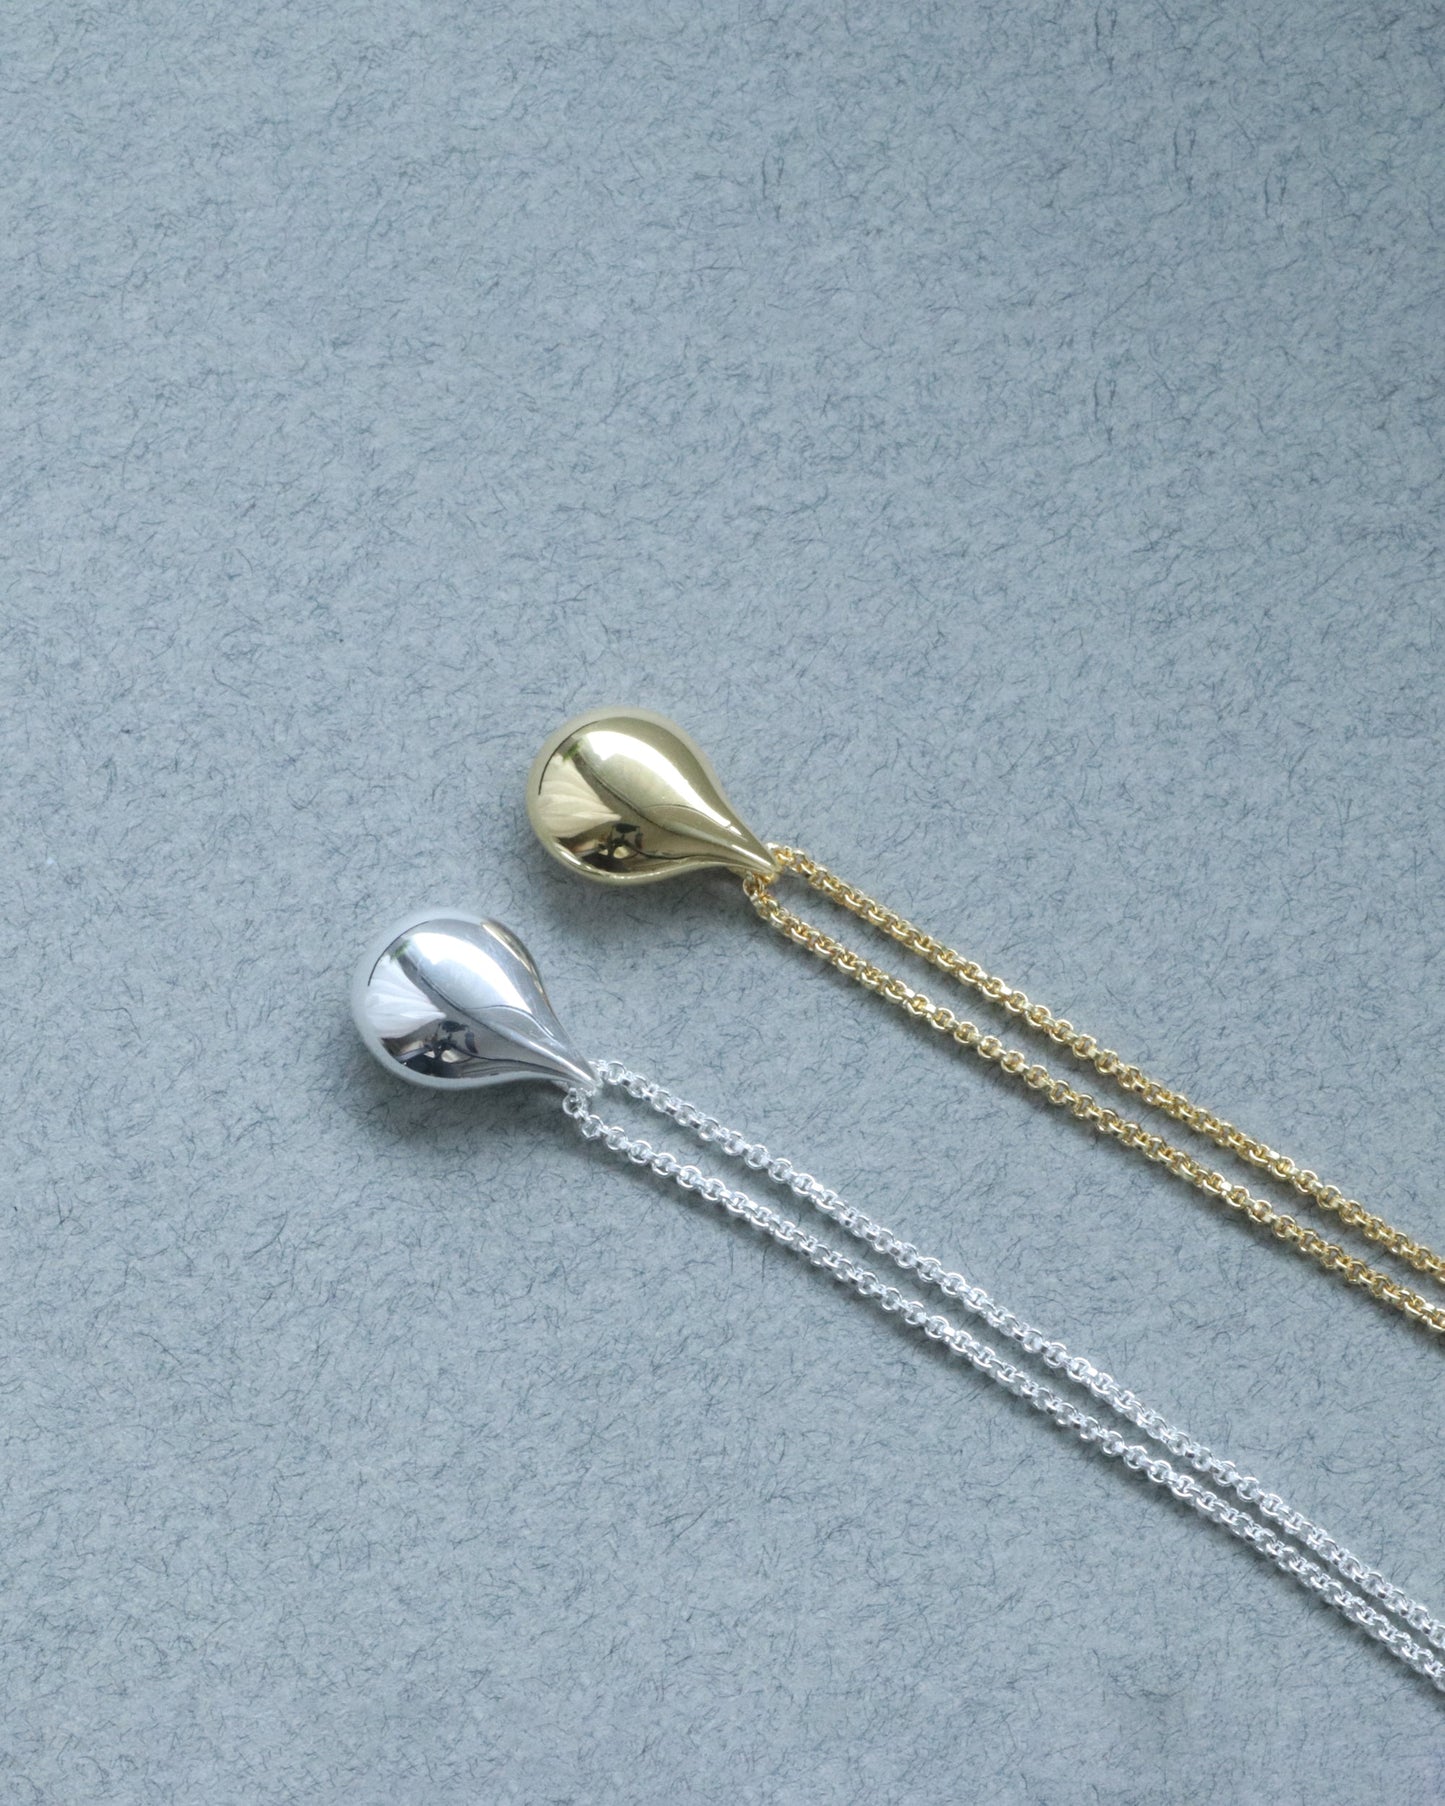 IDAMARI Drop Necklace in Sterling Silver